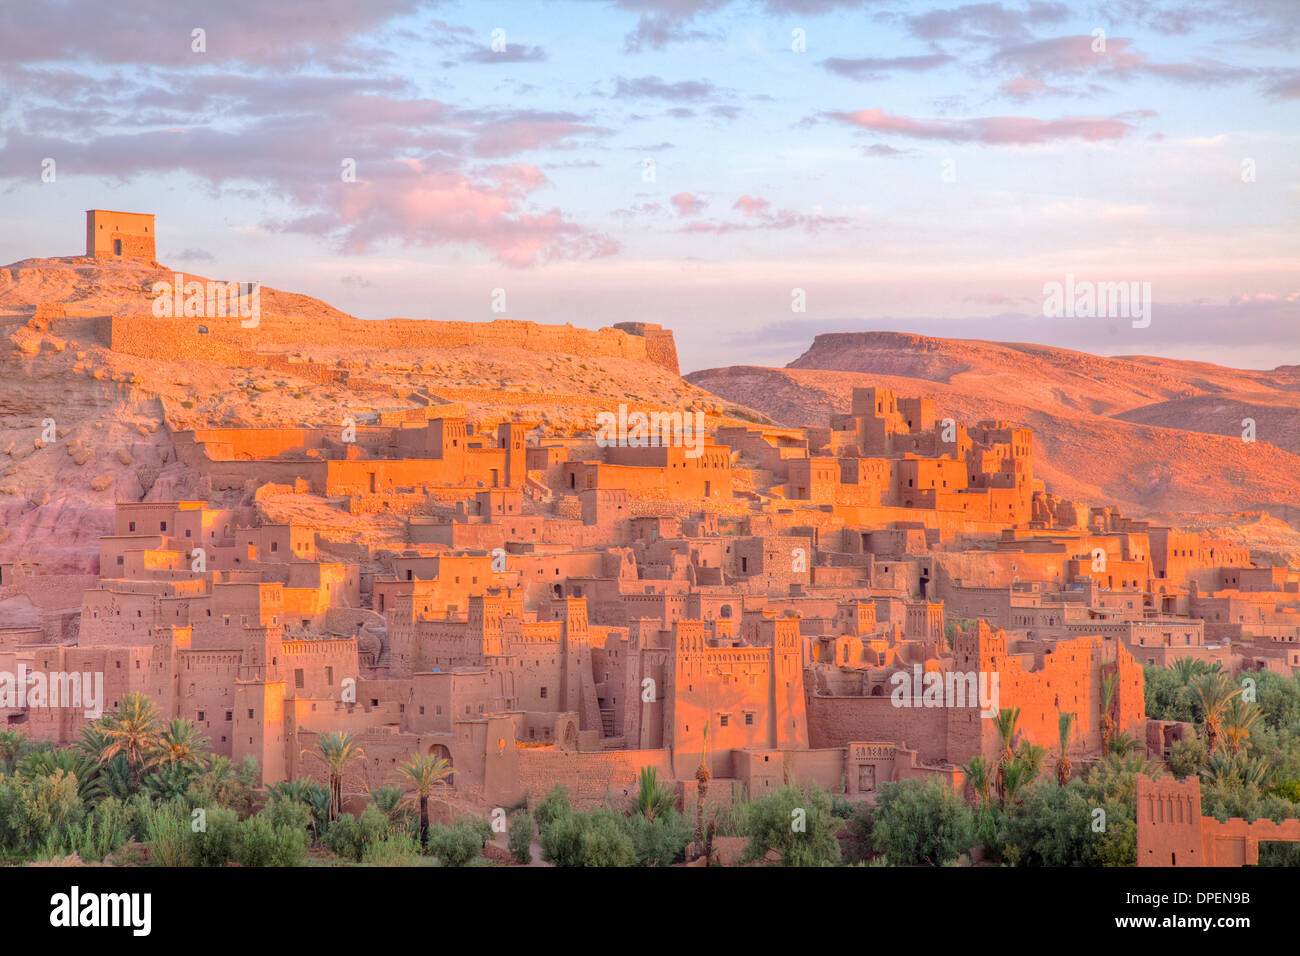 Ait Benhaddou, Marruecos antigua kasbah de ladrillos de barro, el desierto del Sahara 1000 años caravanserai, Sitio del Patrimonio Mundial de la UNESCO Foto de stock